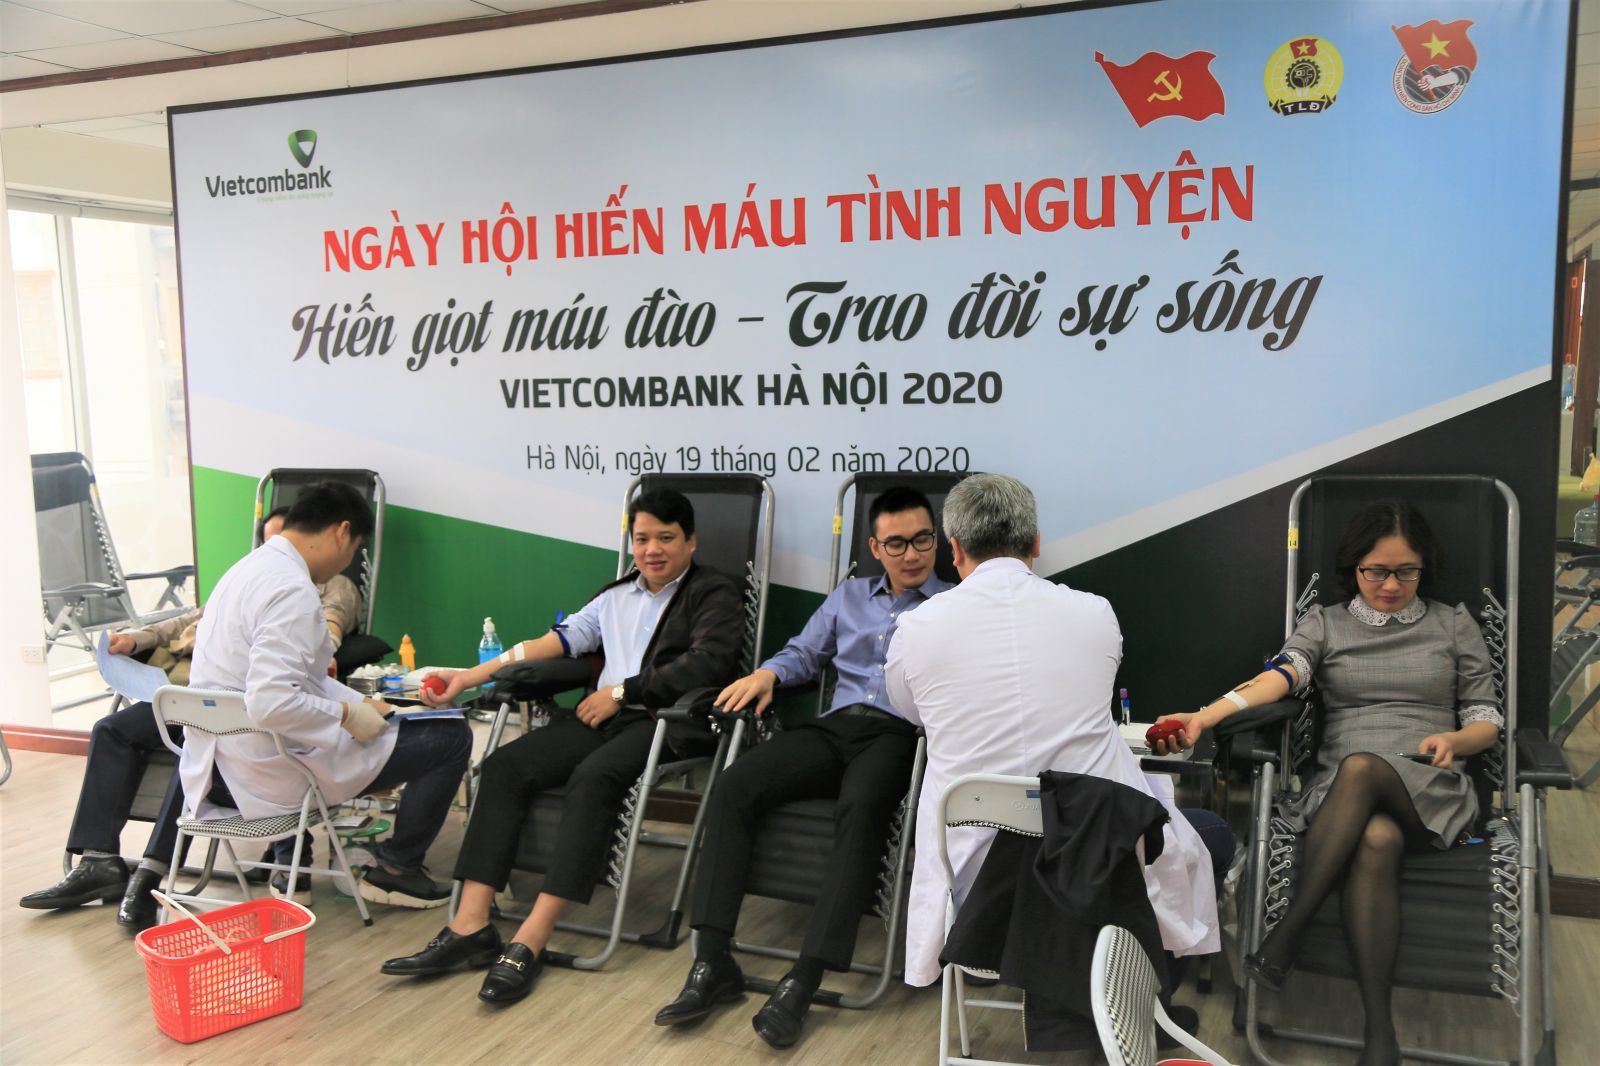 Ngày hội hiến máu tình nguyện do BCH Công đoàn Vietcombank Hà Nội kết hợp với Đoàn thanh niên phát động